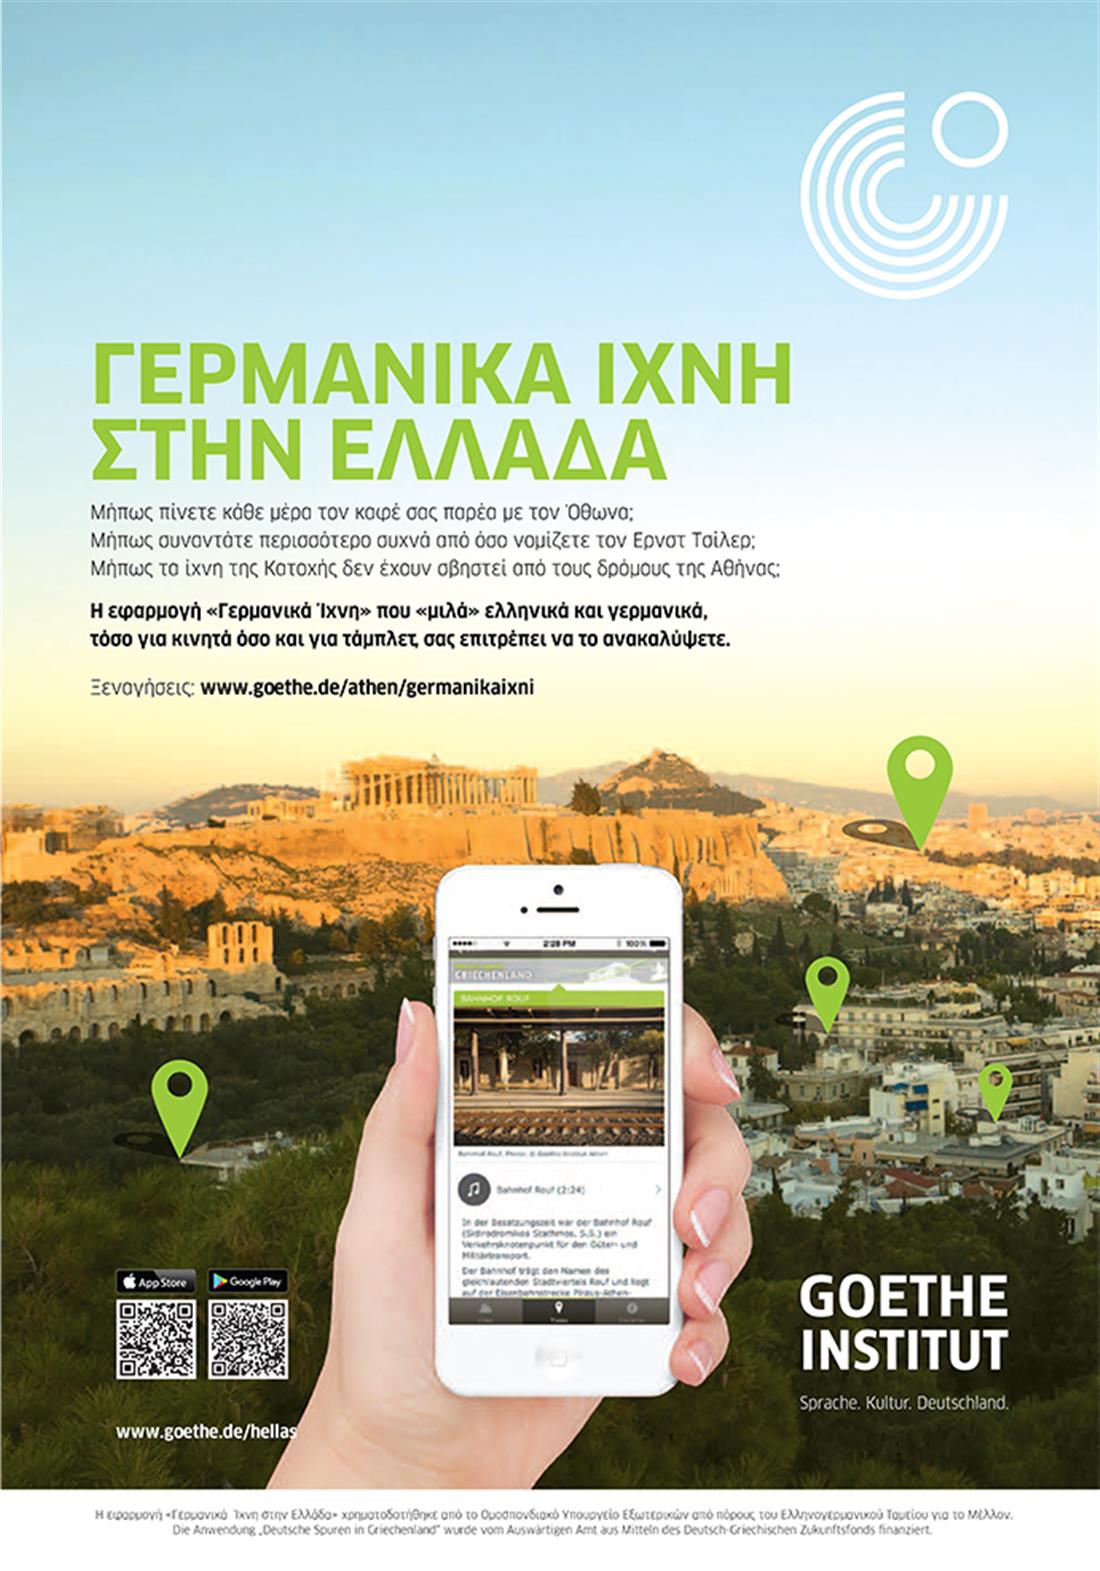 Γερμανικά ίχνη - Ελλάδα - εφαρμογή - ξεναγήσεις - κινητά